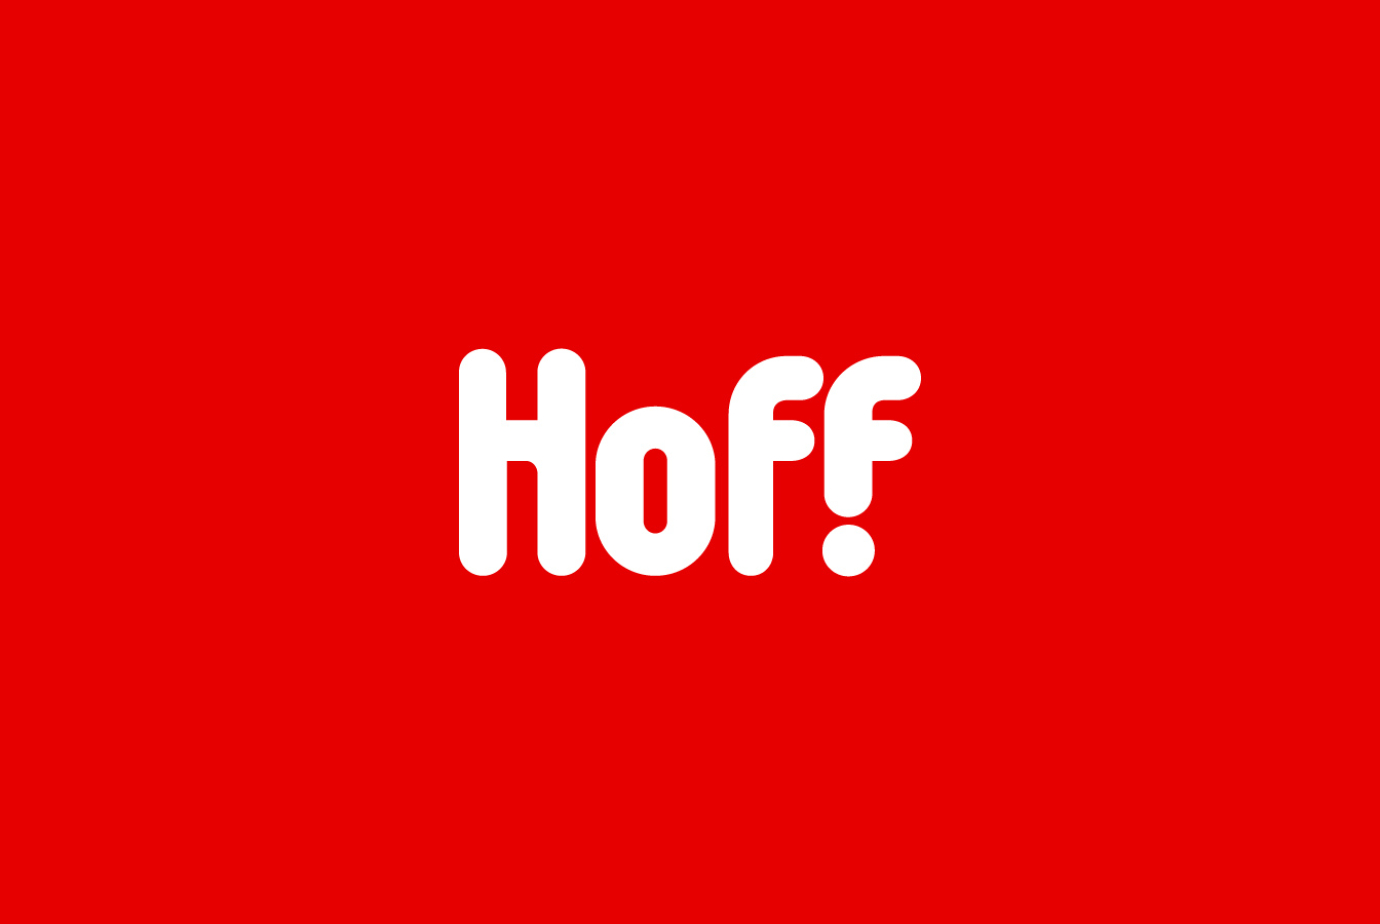 Пример создания бренда гипермаркетов Hoff, крупнейшего российского мебельного ритейлера, представленного на рынке в трех розничных форматах: гипермаркет Hoff, городской формат Hoff Home и лаконичный концепт-формат Hoff Smart. 